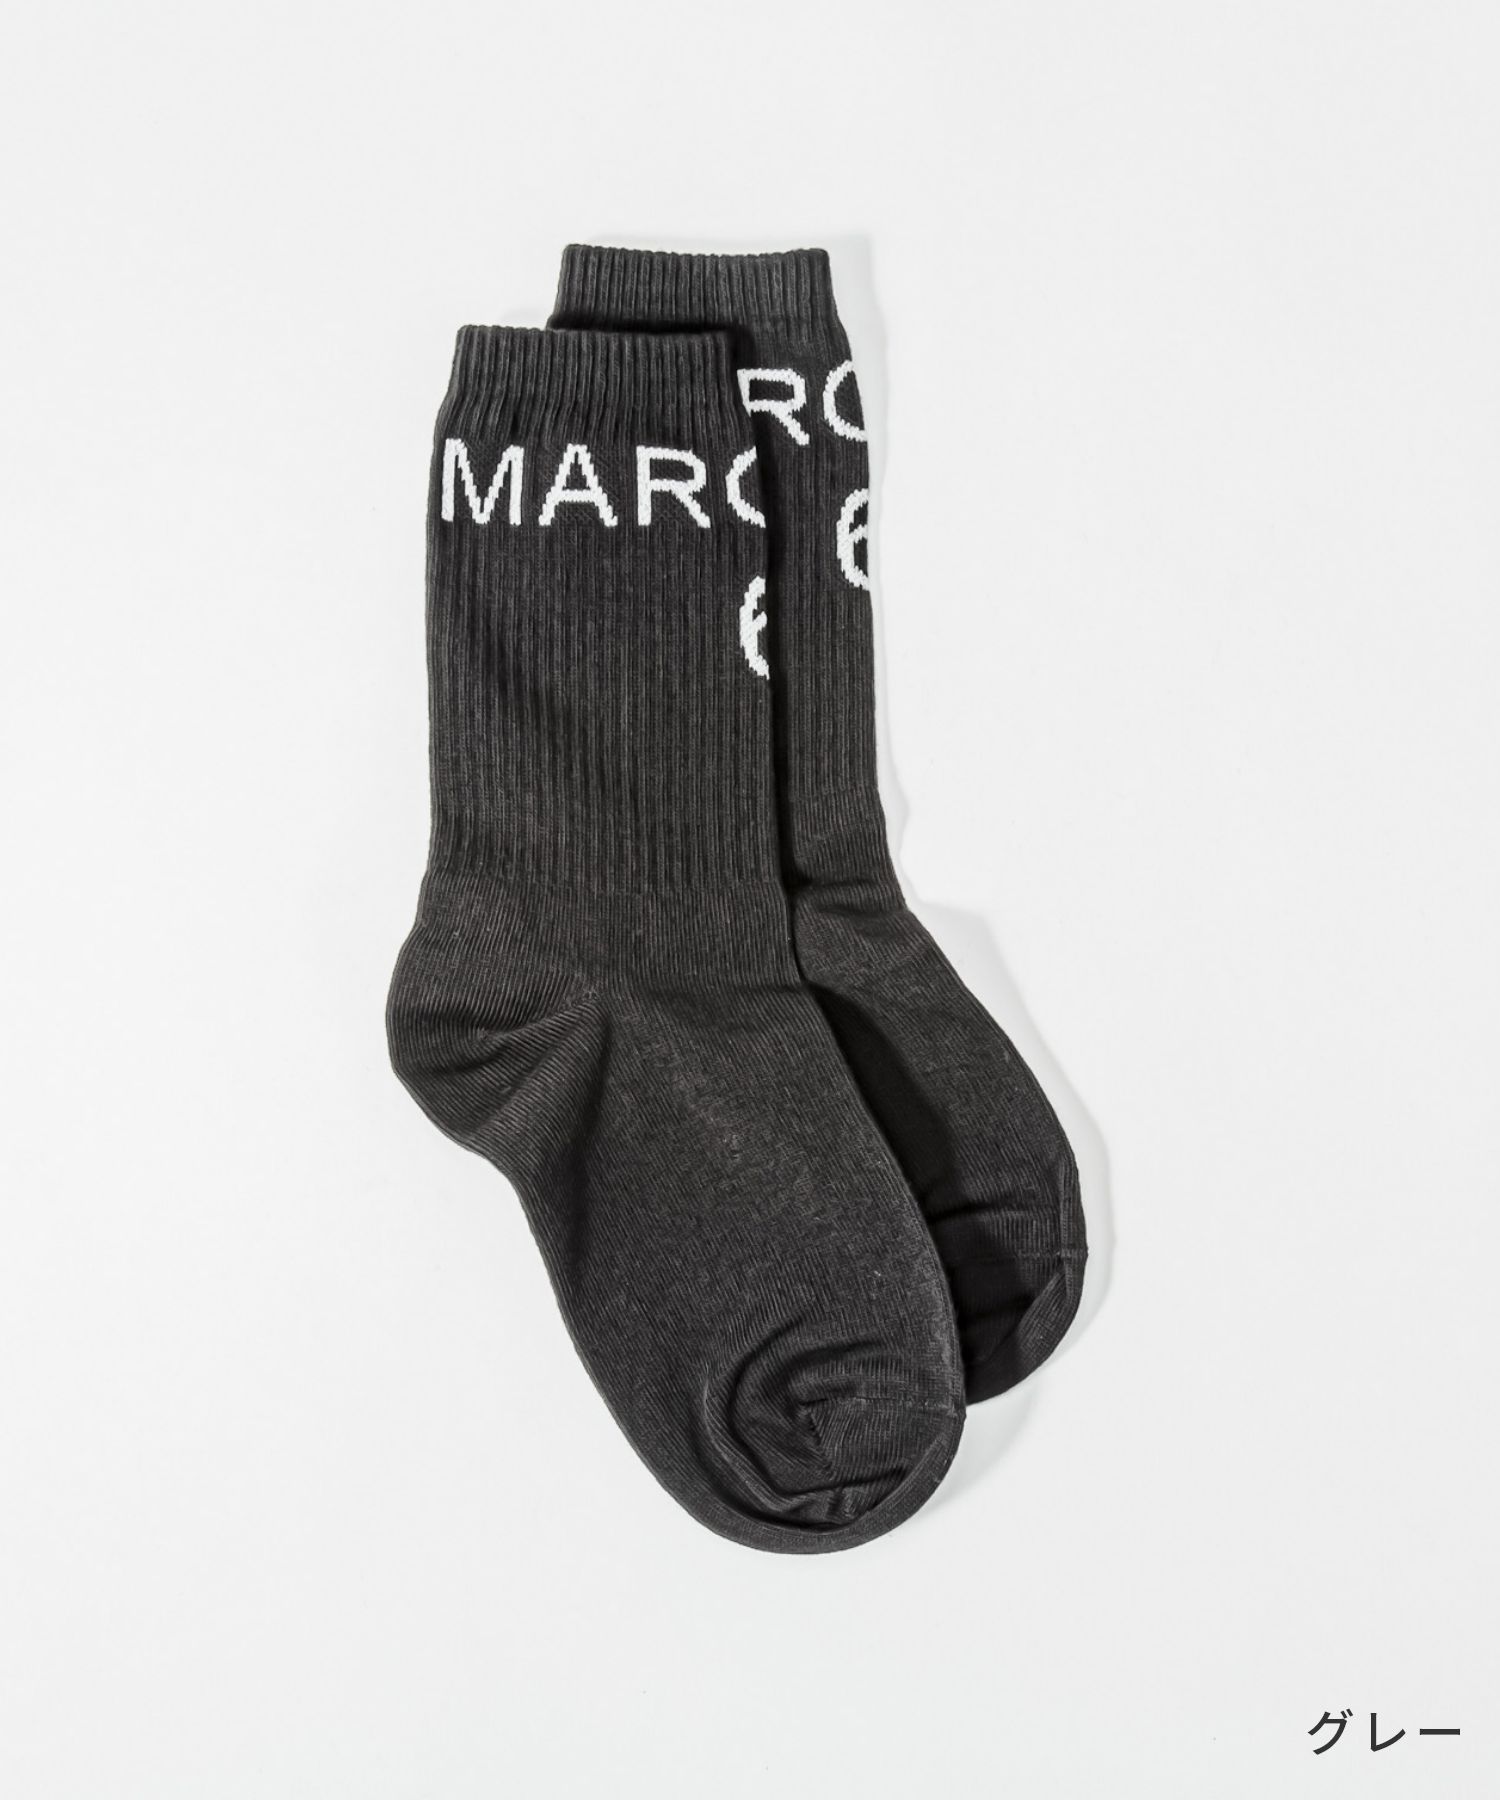 Maison Margiela 靴下 メンズソックス ブラック Sサイズ